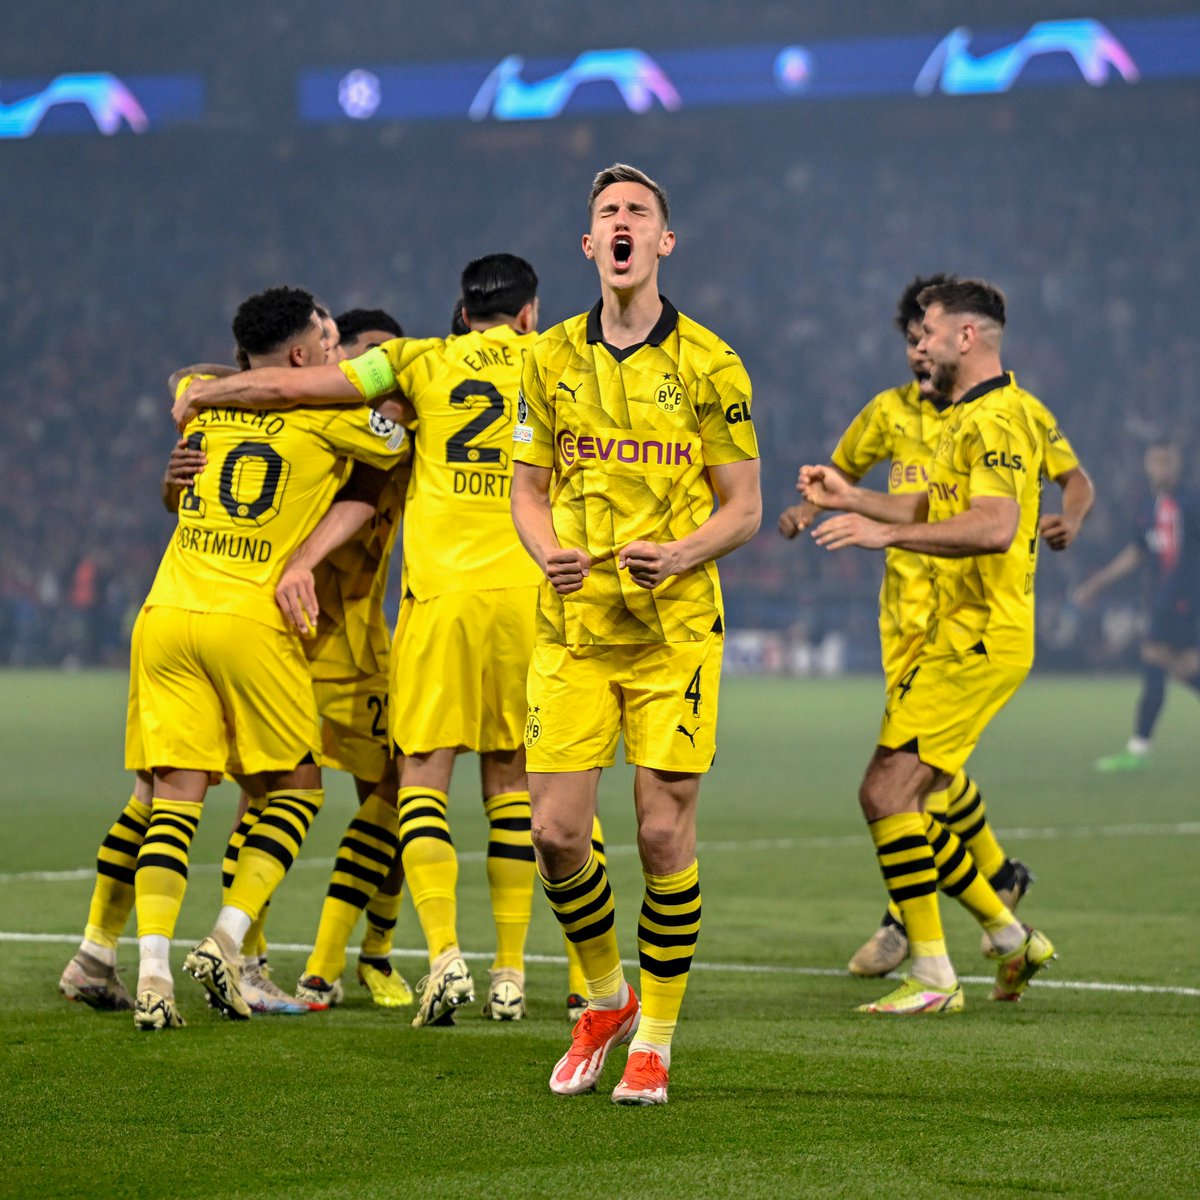 ⚽️ FOOTBALL : Le PSG est éliminé aux portes de la finale de la Ligue des champions, à nouveau battu 1-0 par Dortmund au Parc des Princes. #PSGBVB